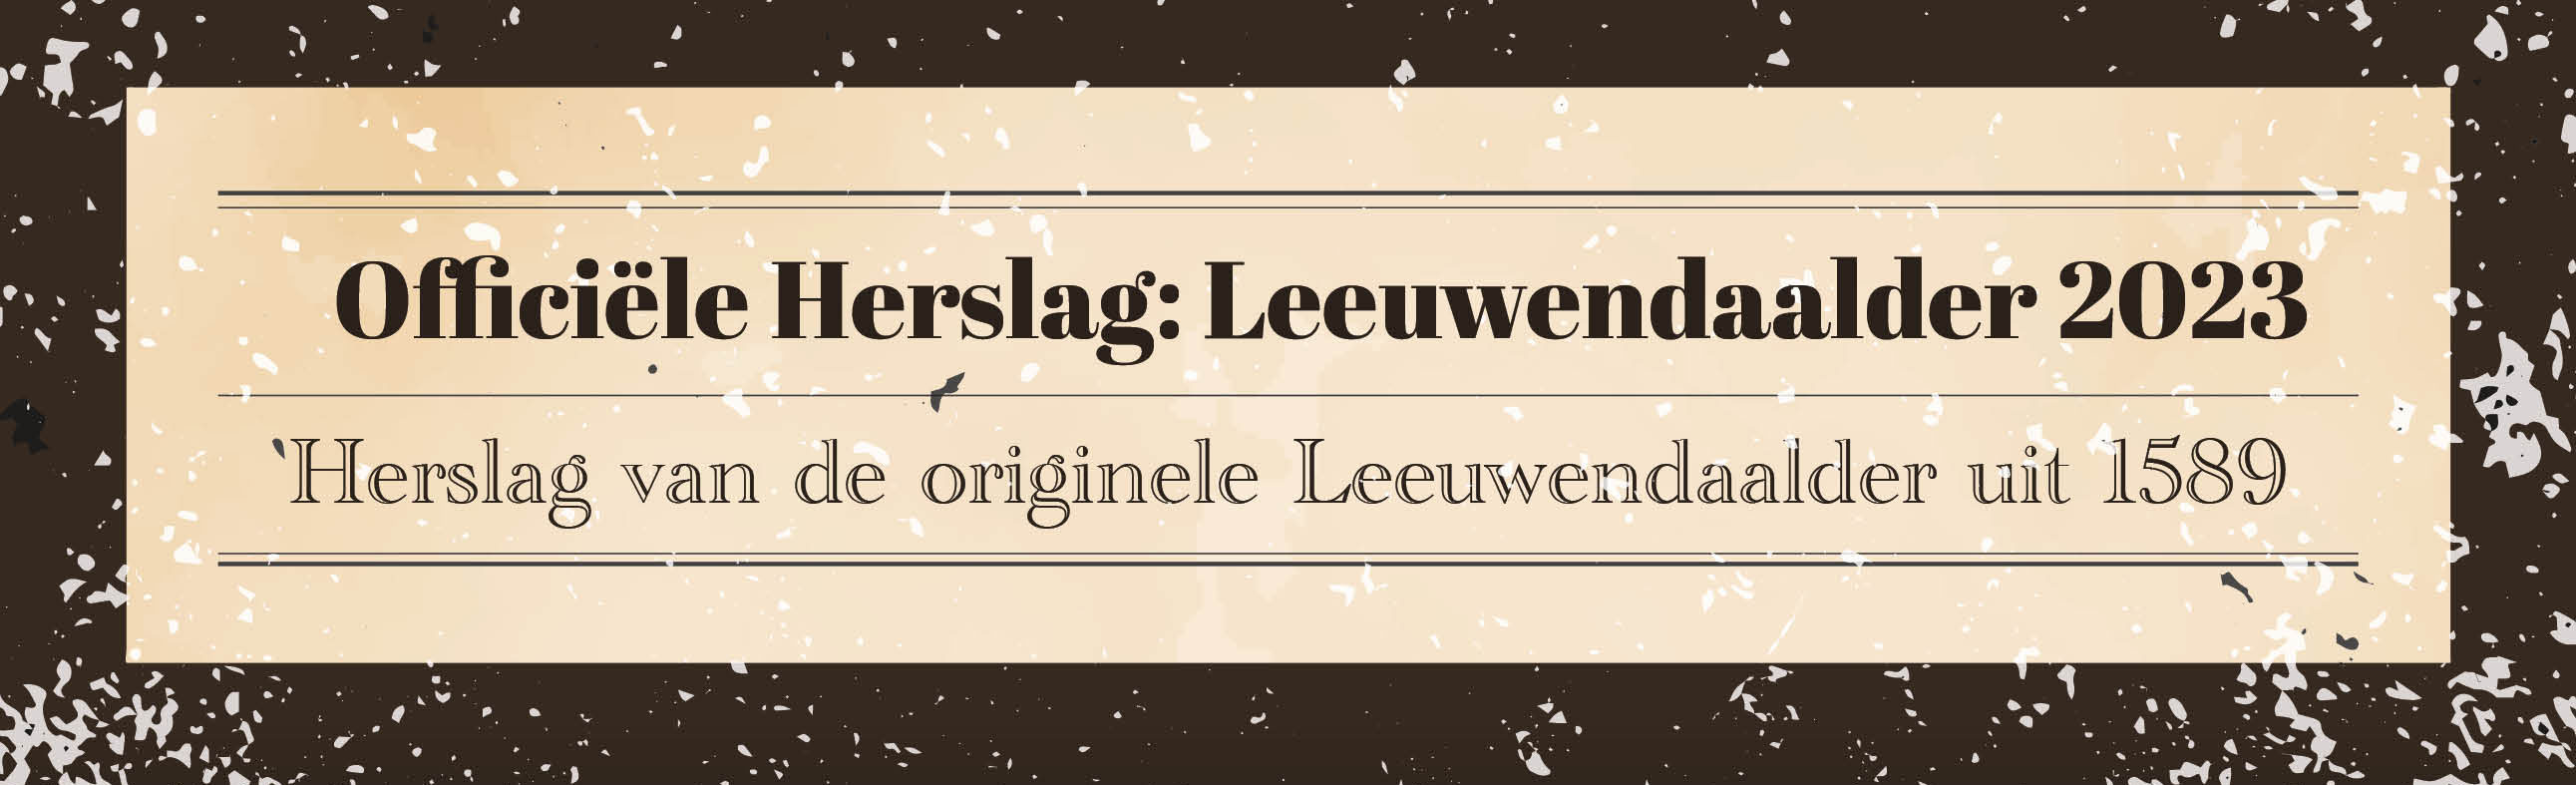 Bekijk en bestel: Officiële Herslag: Leeuwendaalders 2023 - West Friesland editie